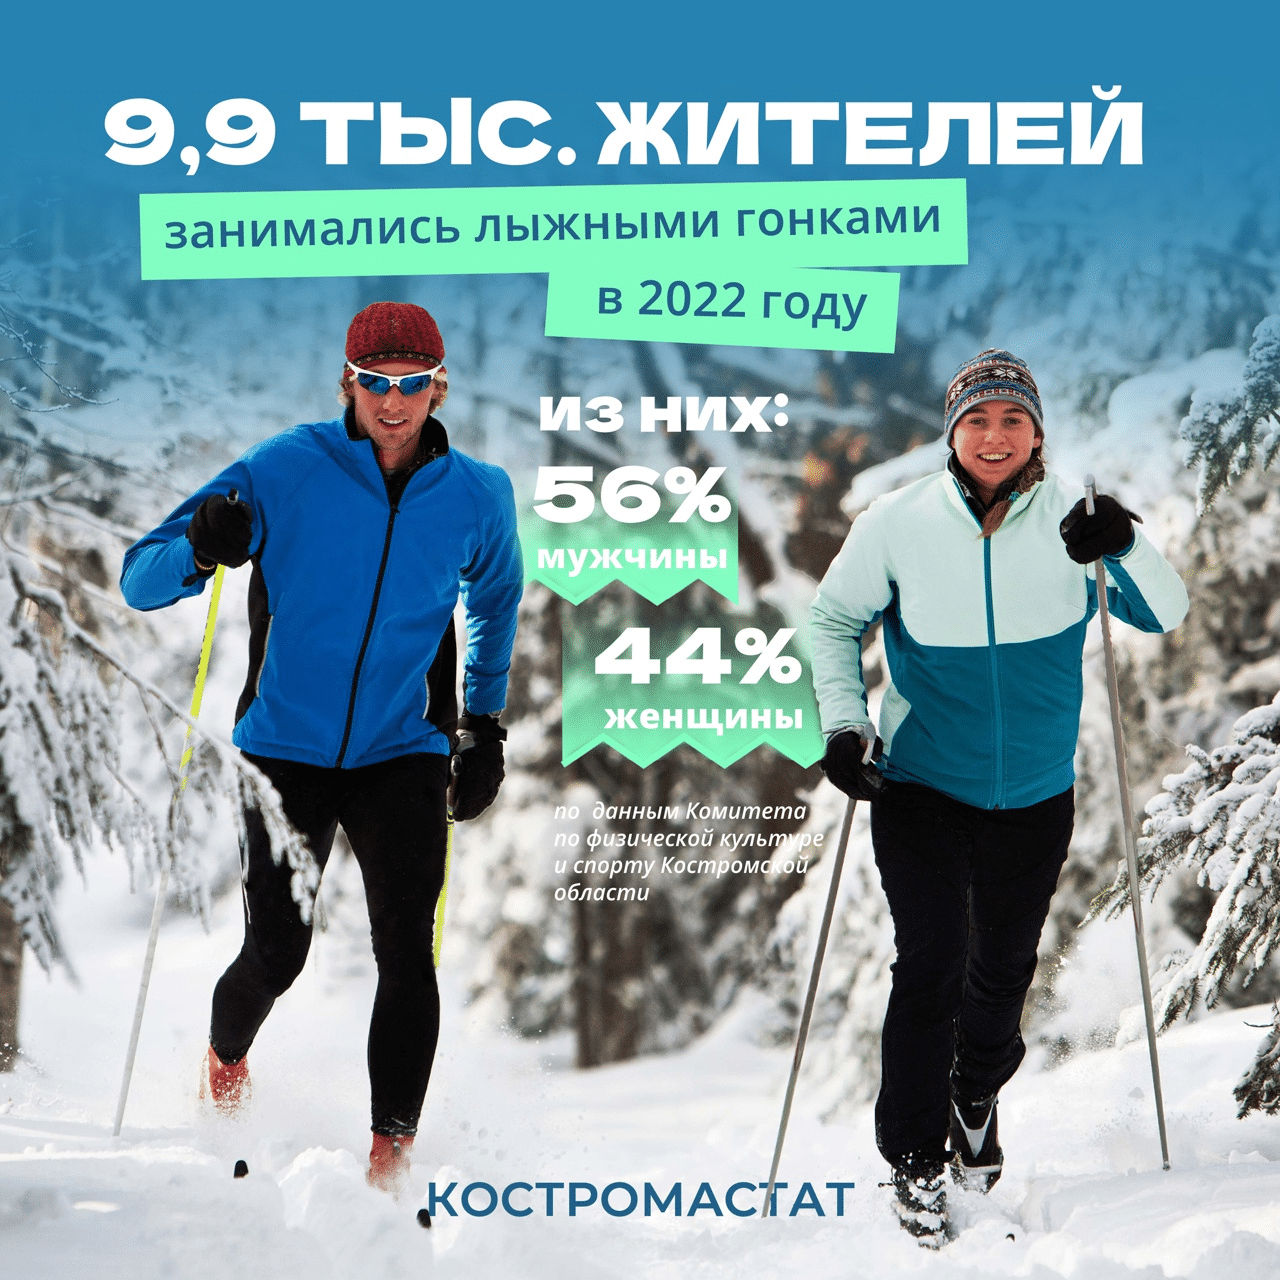 Костромастат: в области десять тысяч человек любят лыжи